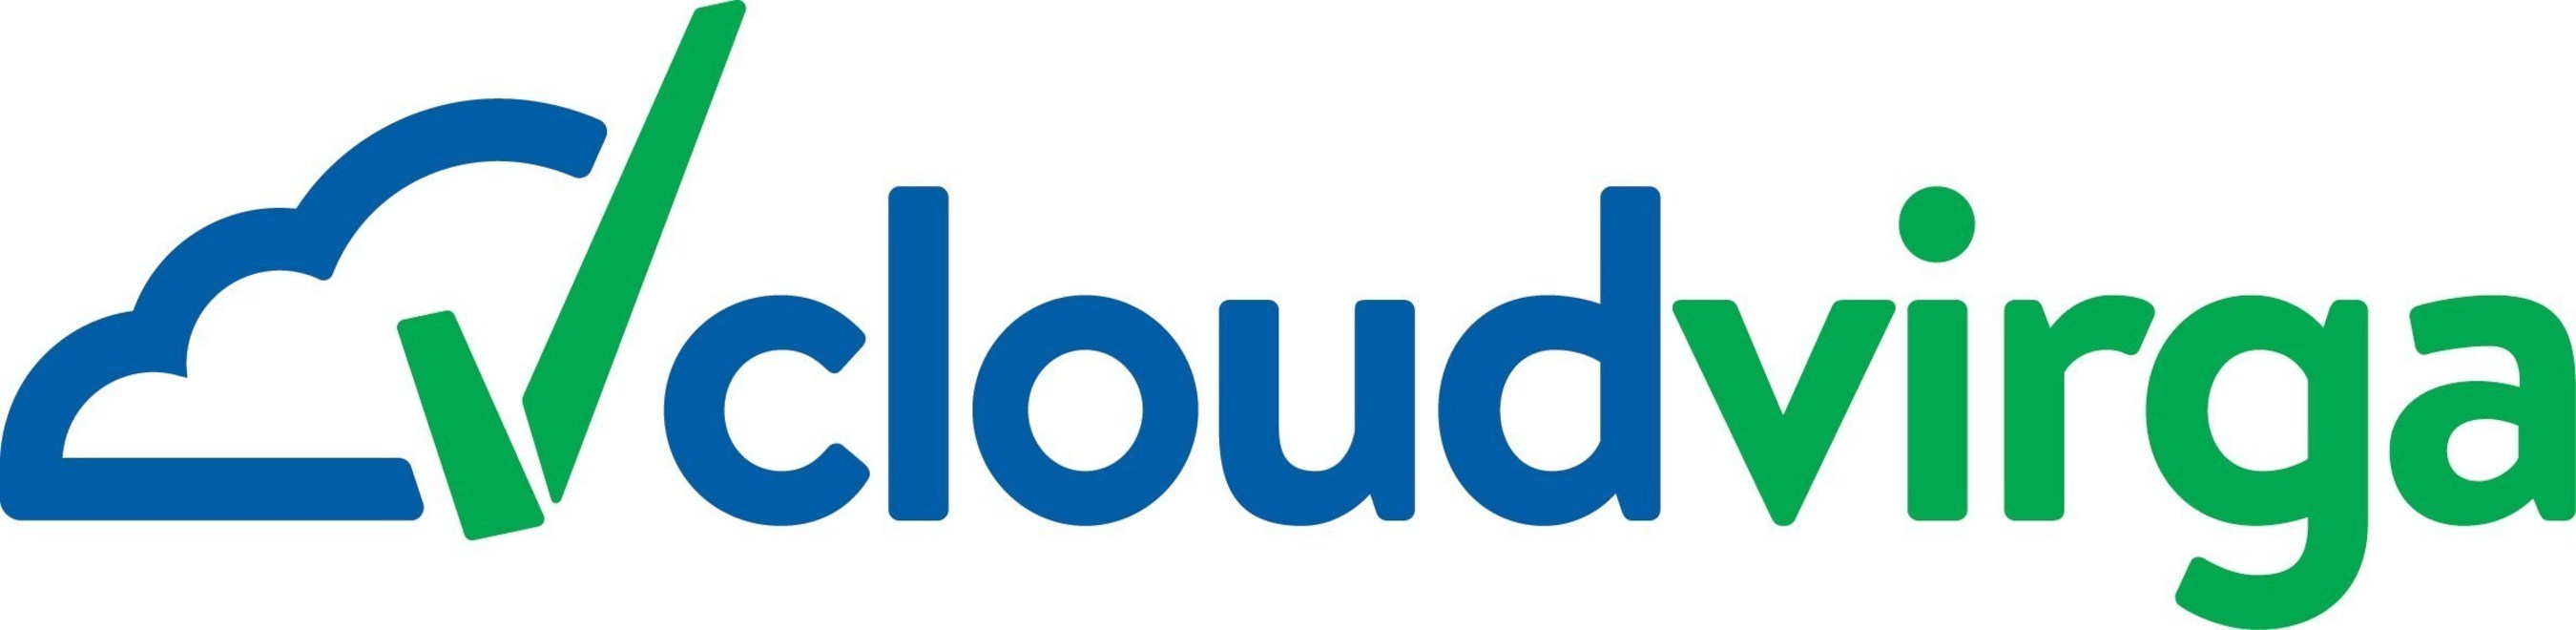 cloudvirga_Logo